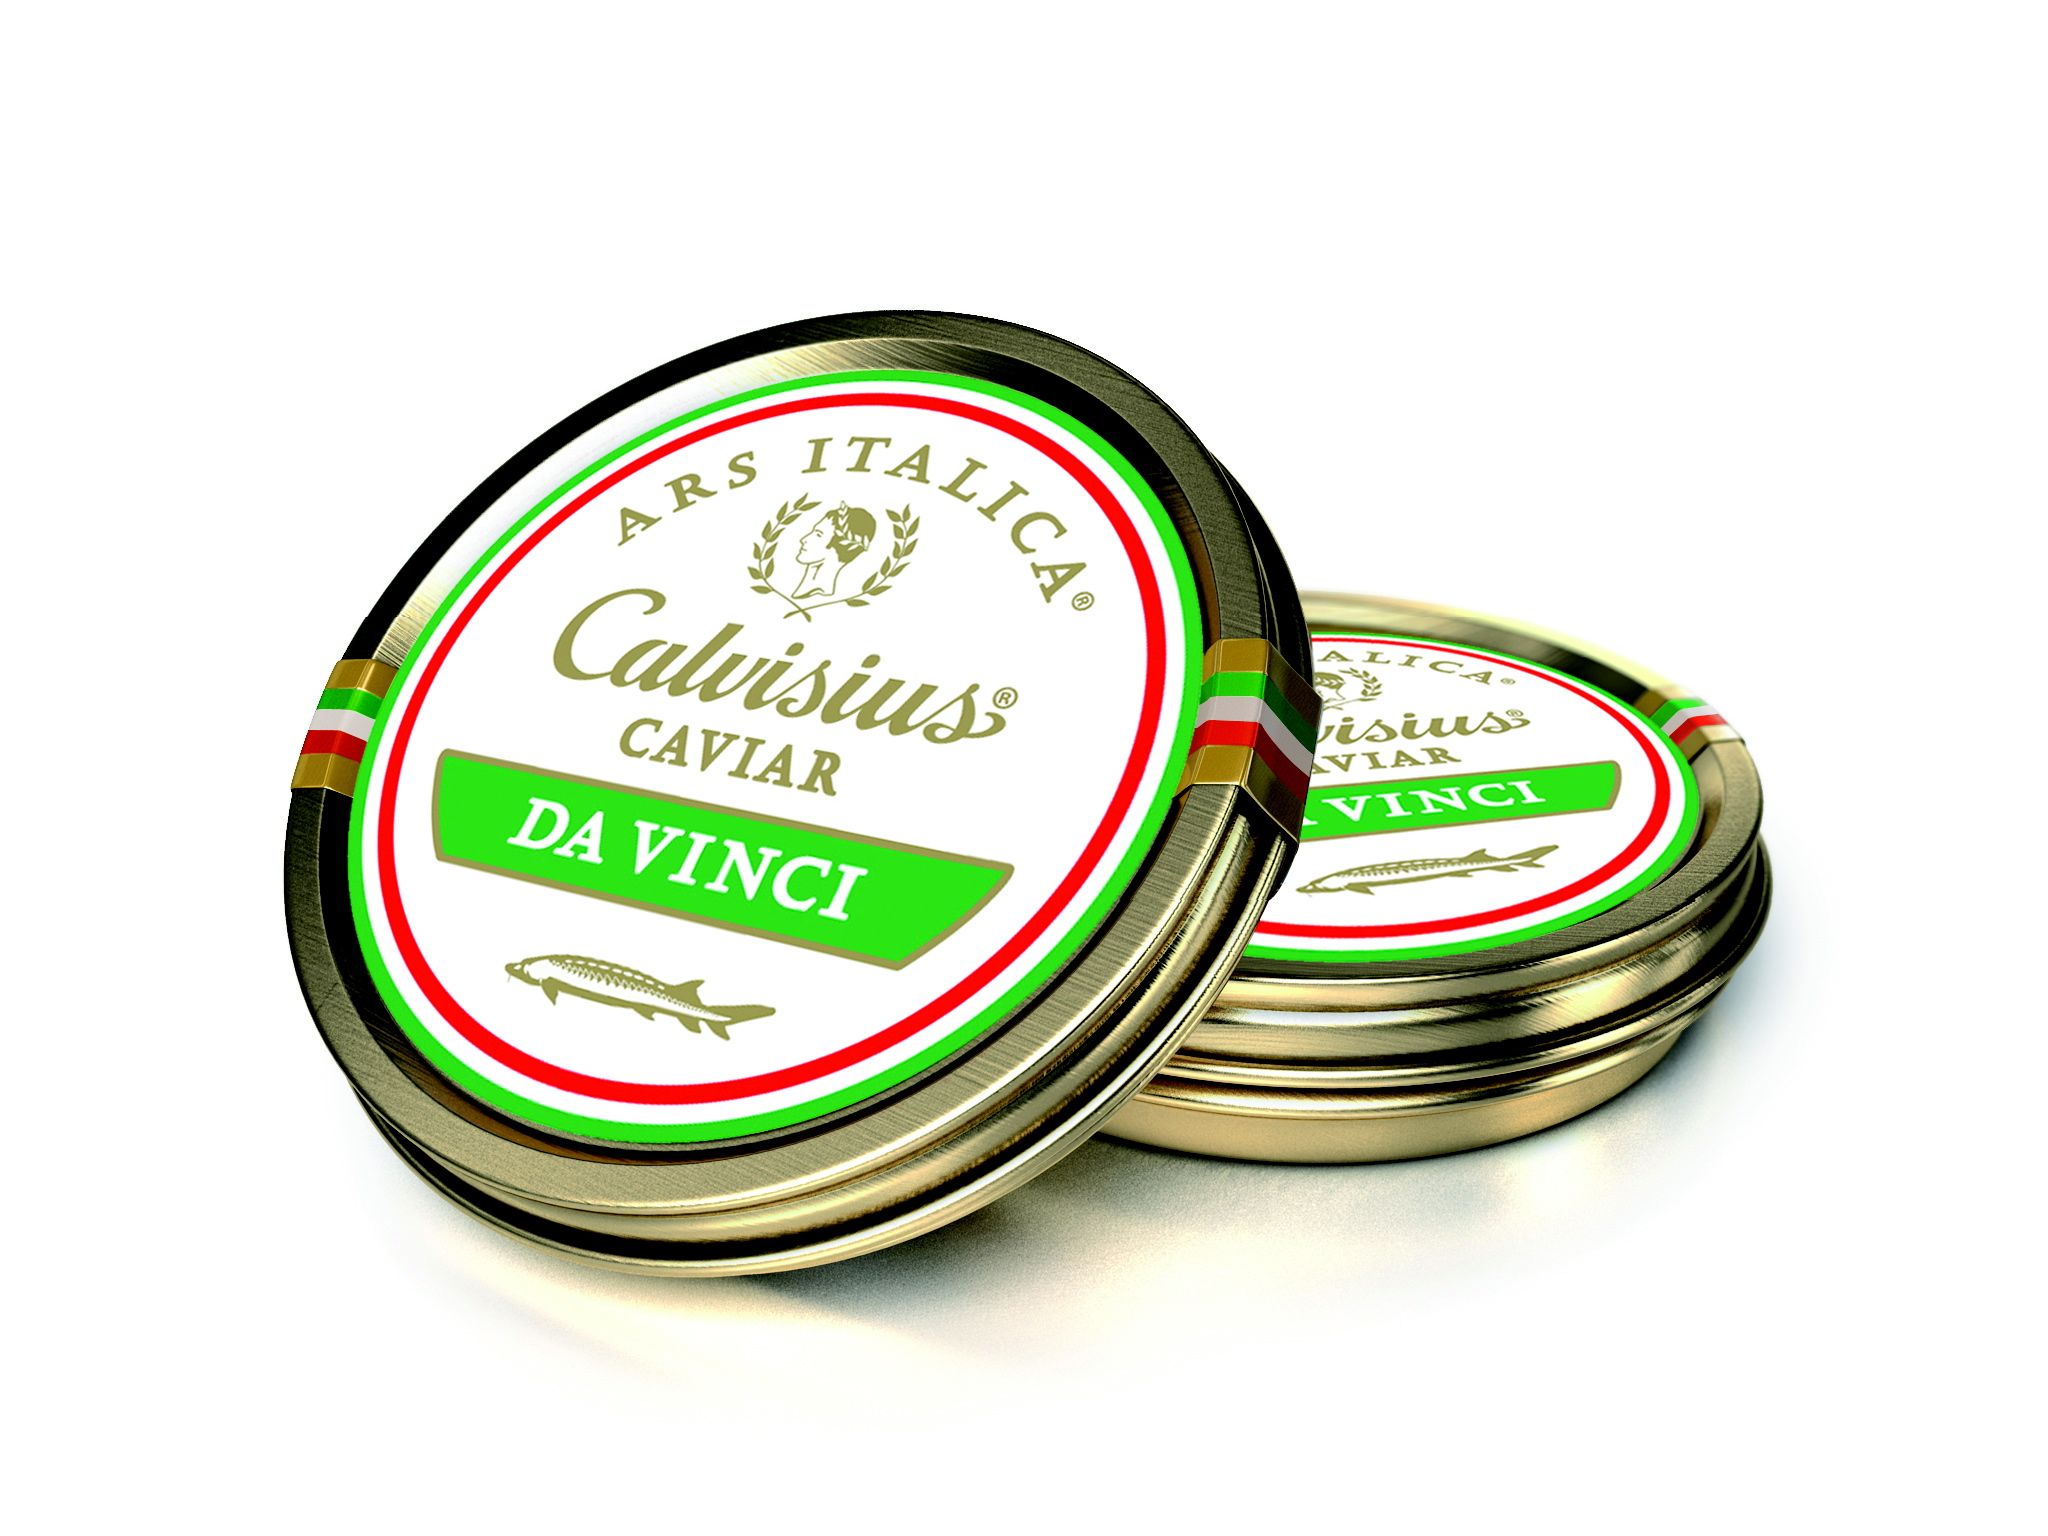 Caviar Calvisius da Vinci 50g